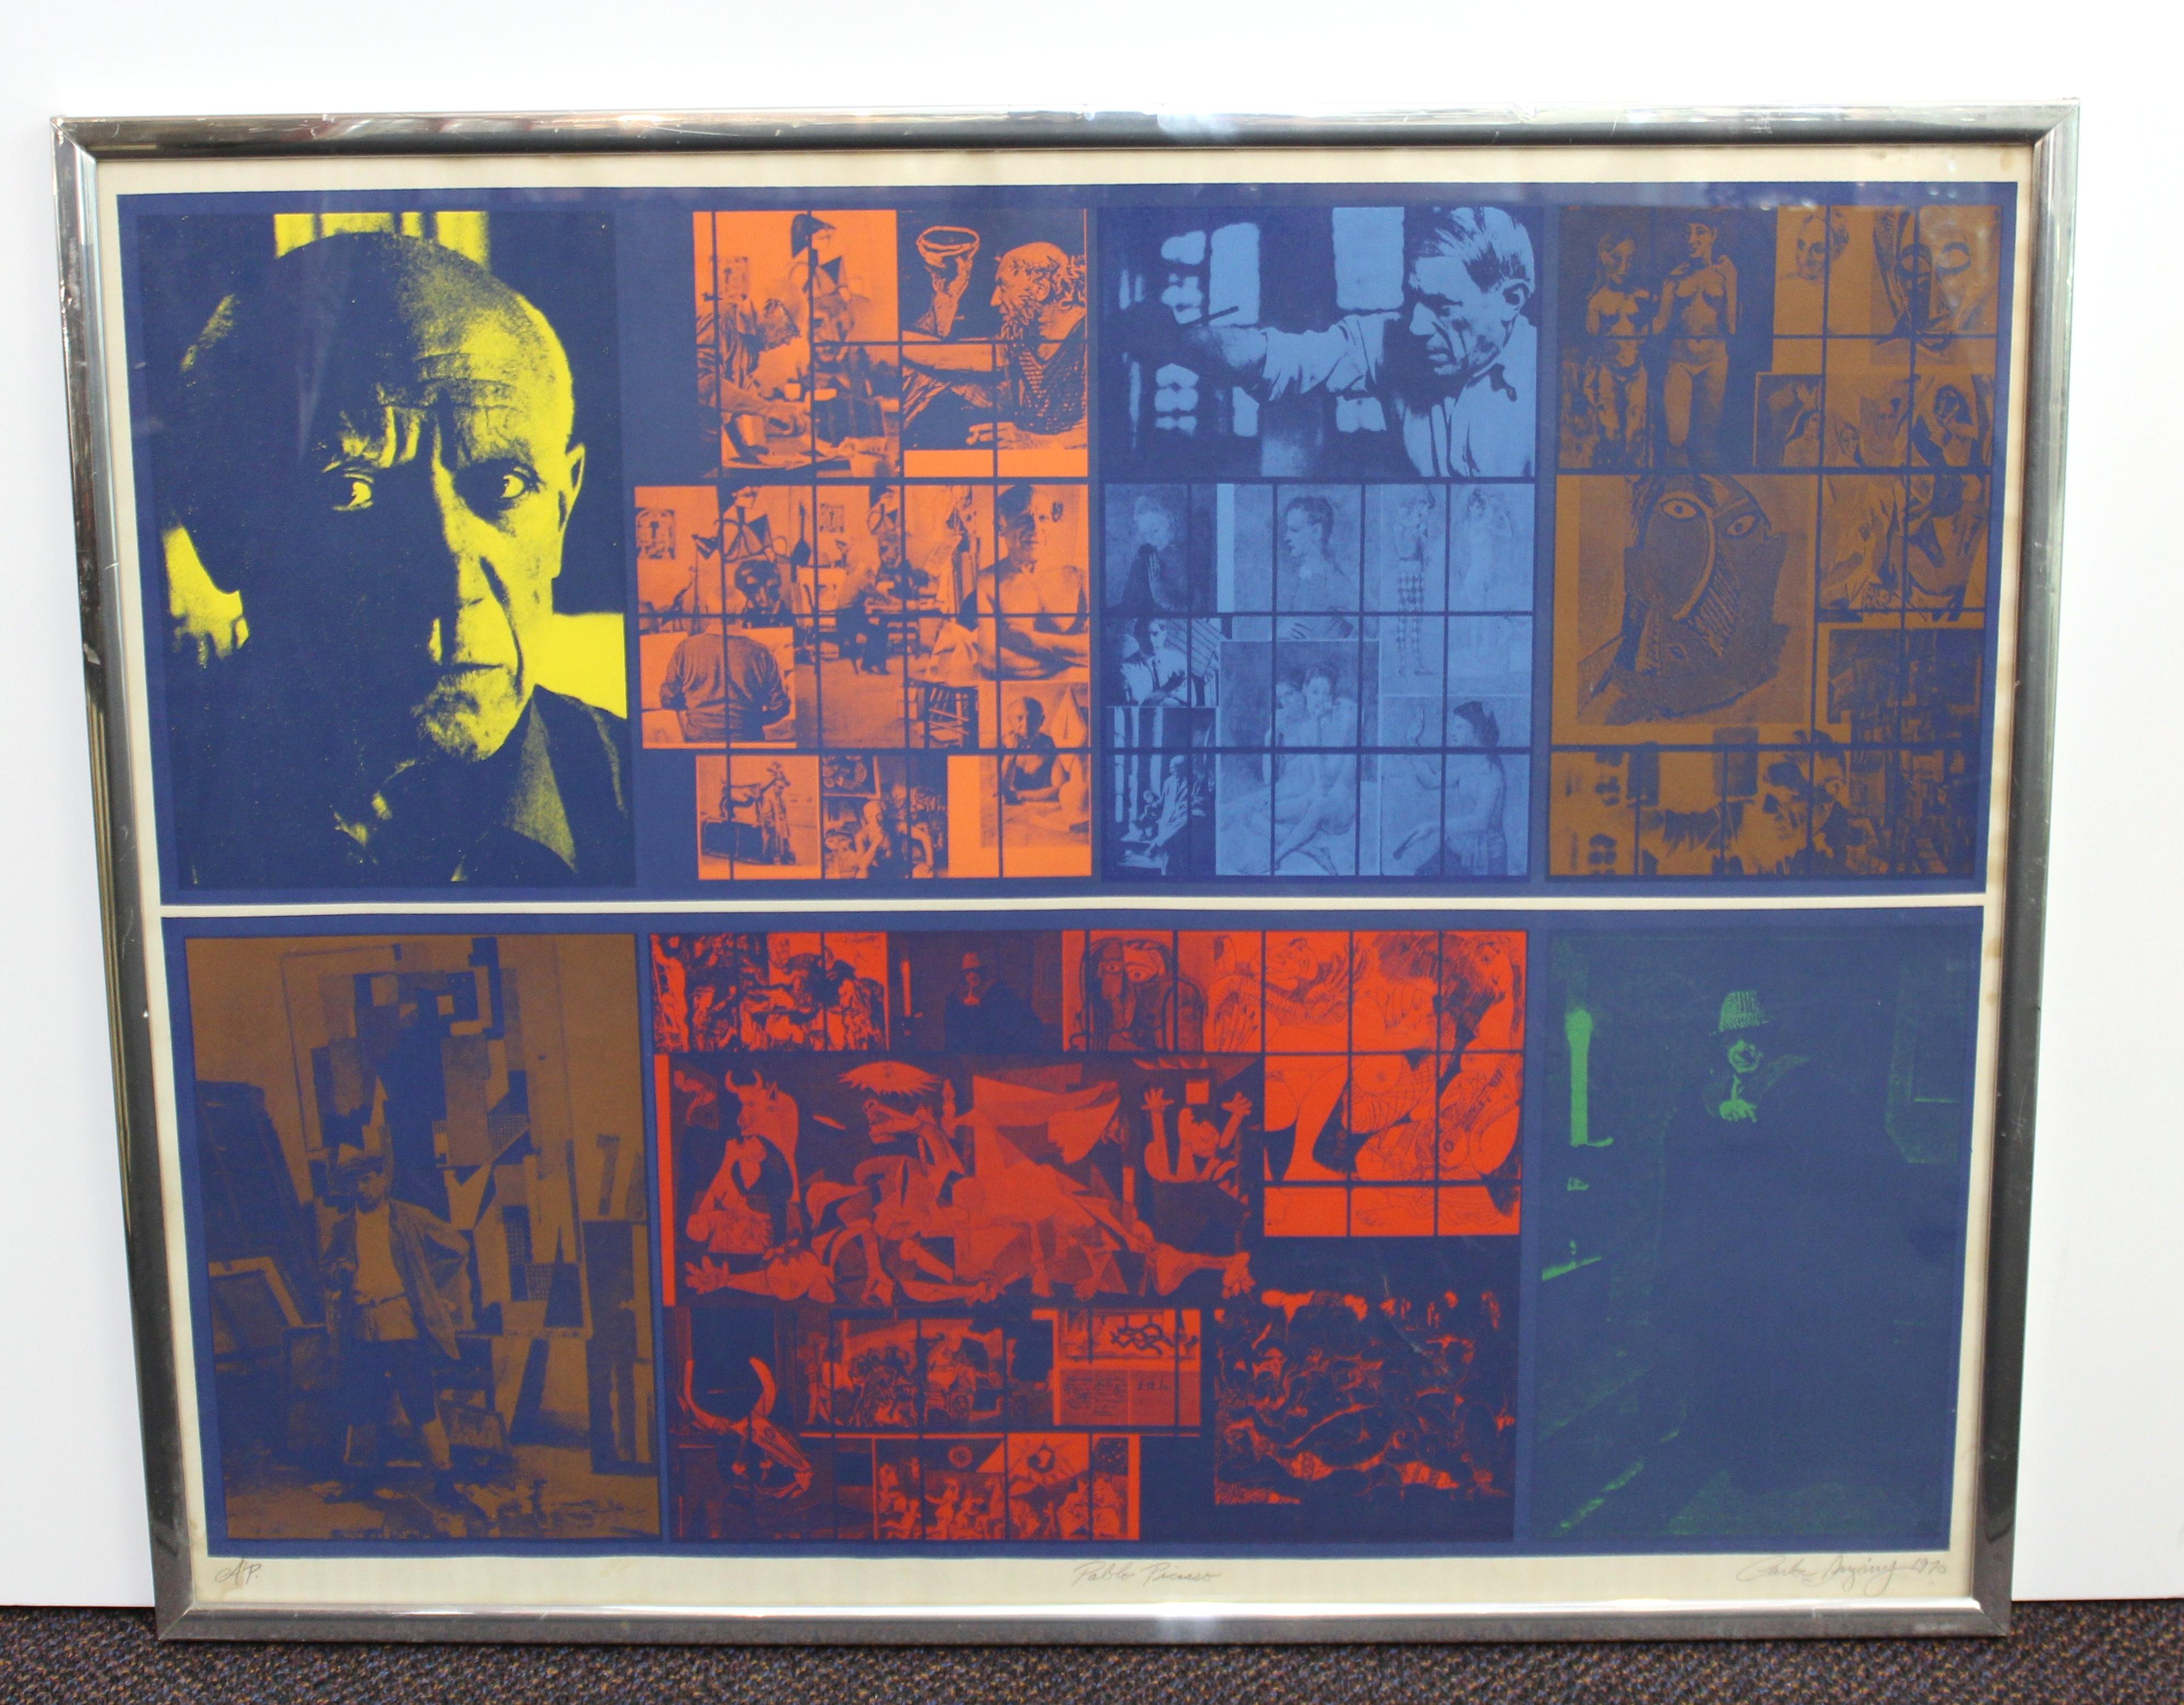 Pop-Art-Künstlerserigrafie von Carlos Irizarry aus dem Jahr 1970, die eine bunte Collage aus Fotos von Pablo Picasso in seinem Atelier und einigen seiner Kunstwerke zeigt. Das Werk ist in der linken unteren Ecke mit Bleistift 